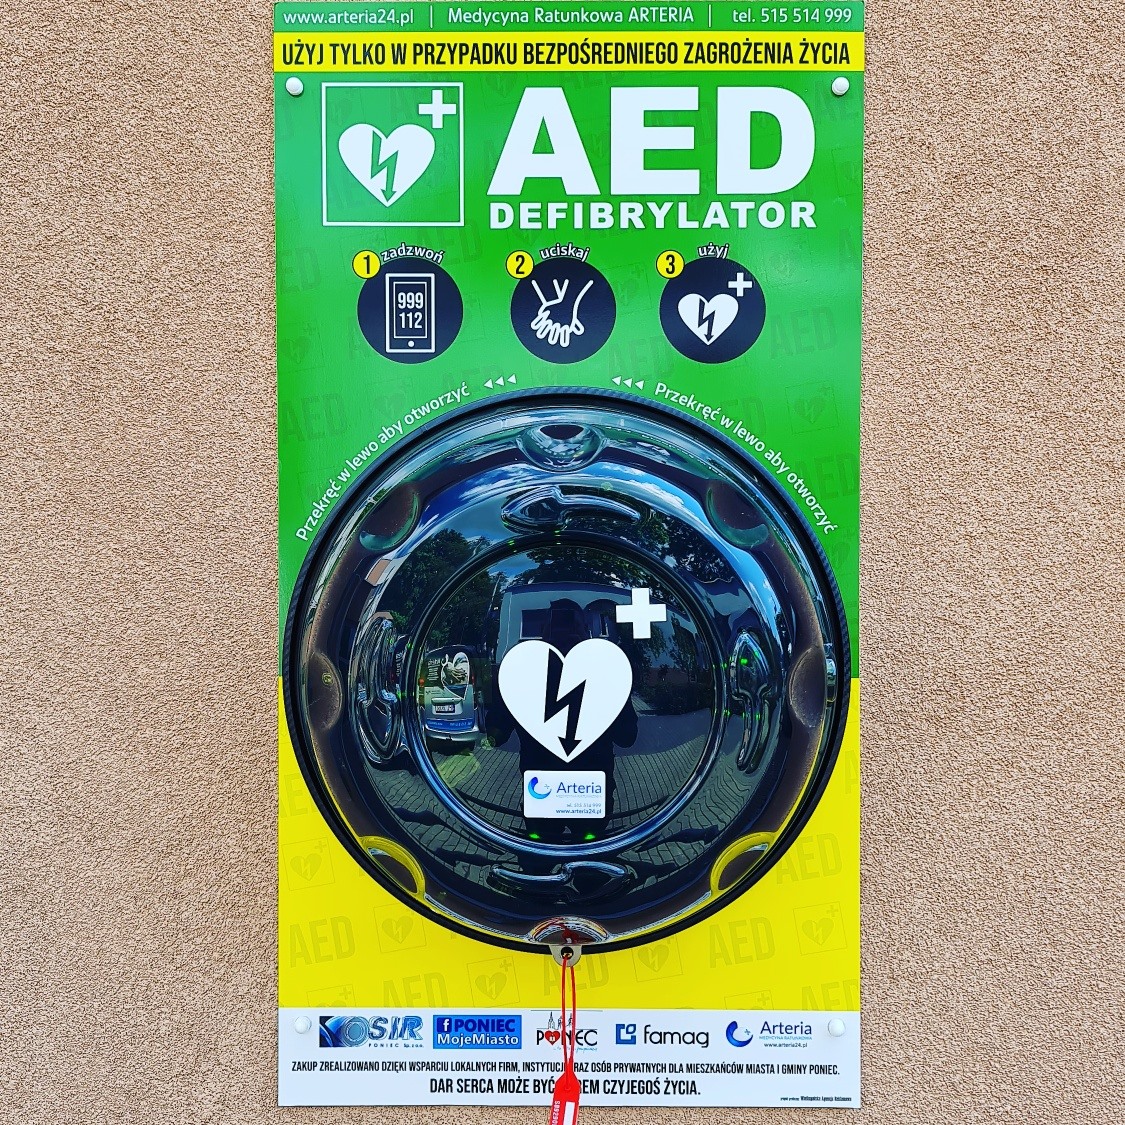 AED w poniecu zamontowane w kapsule Rotaid